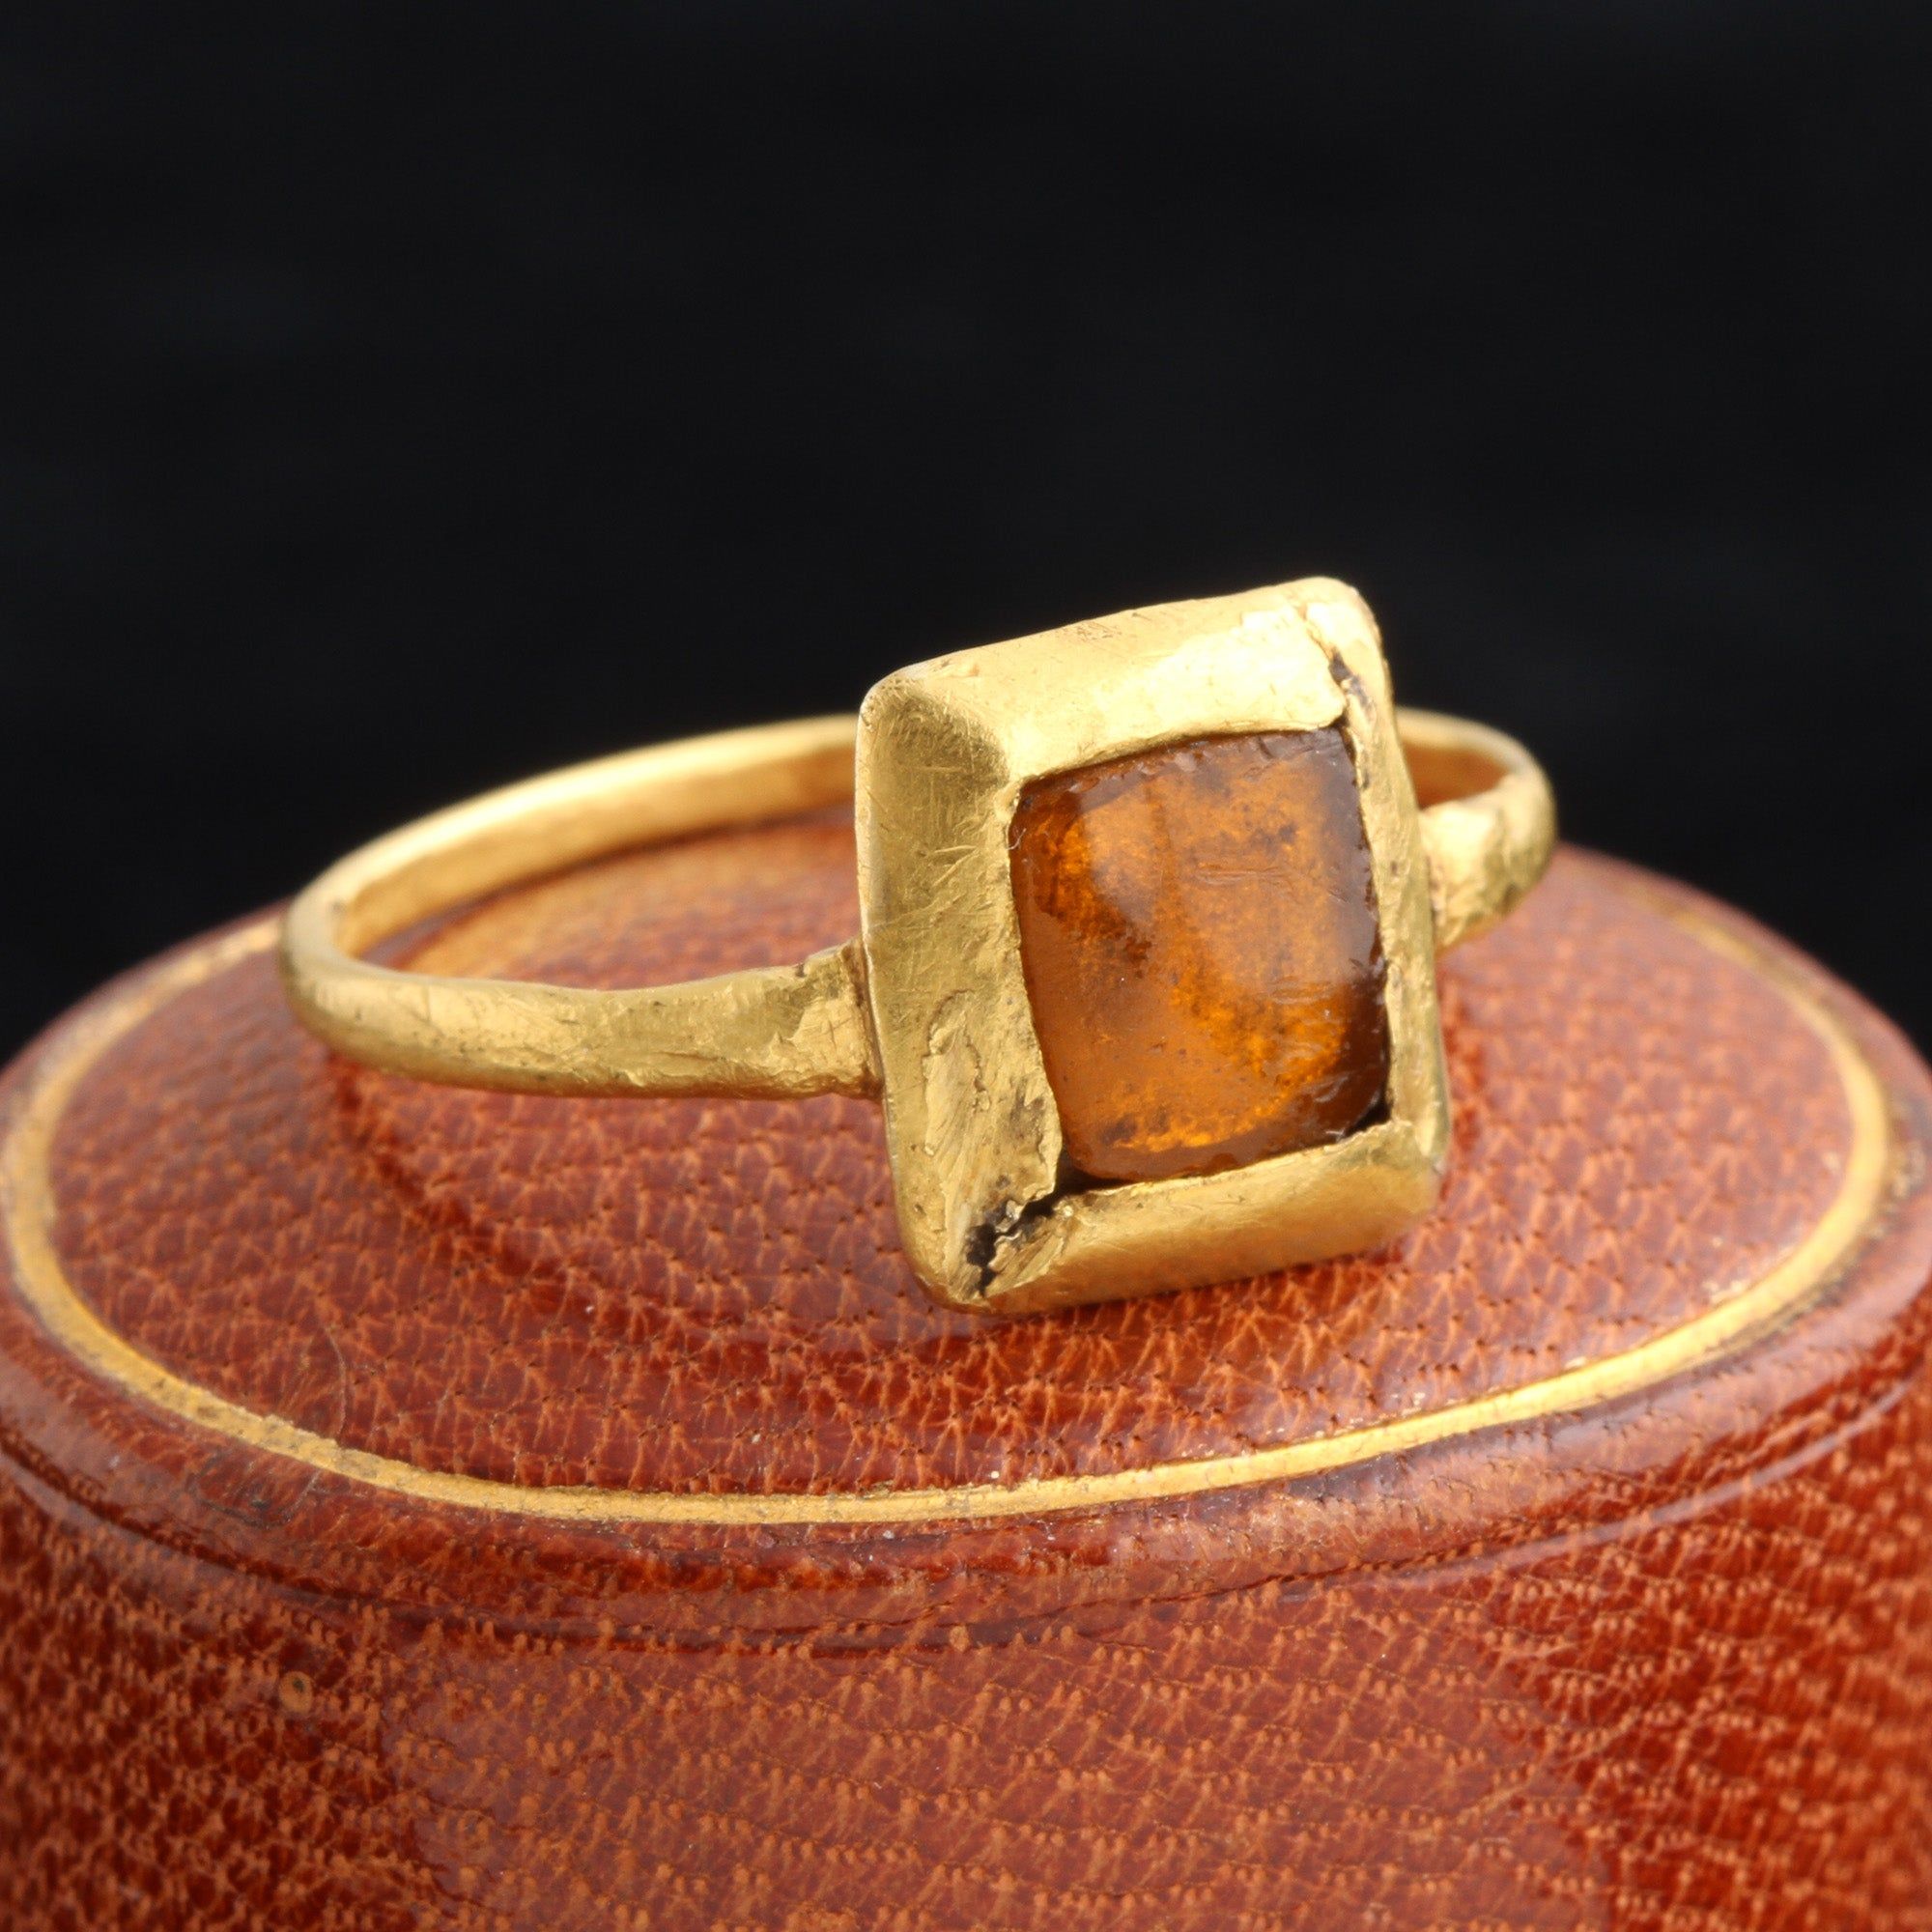 Medieval "Tart Mold" Ring